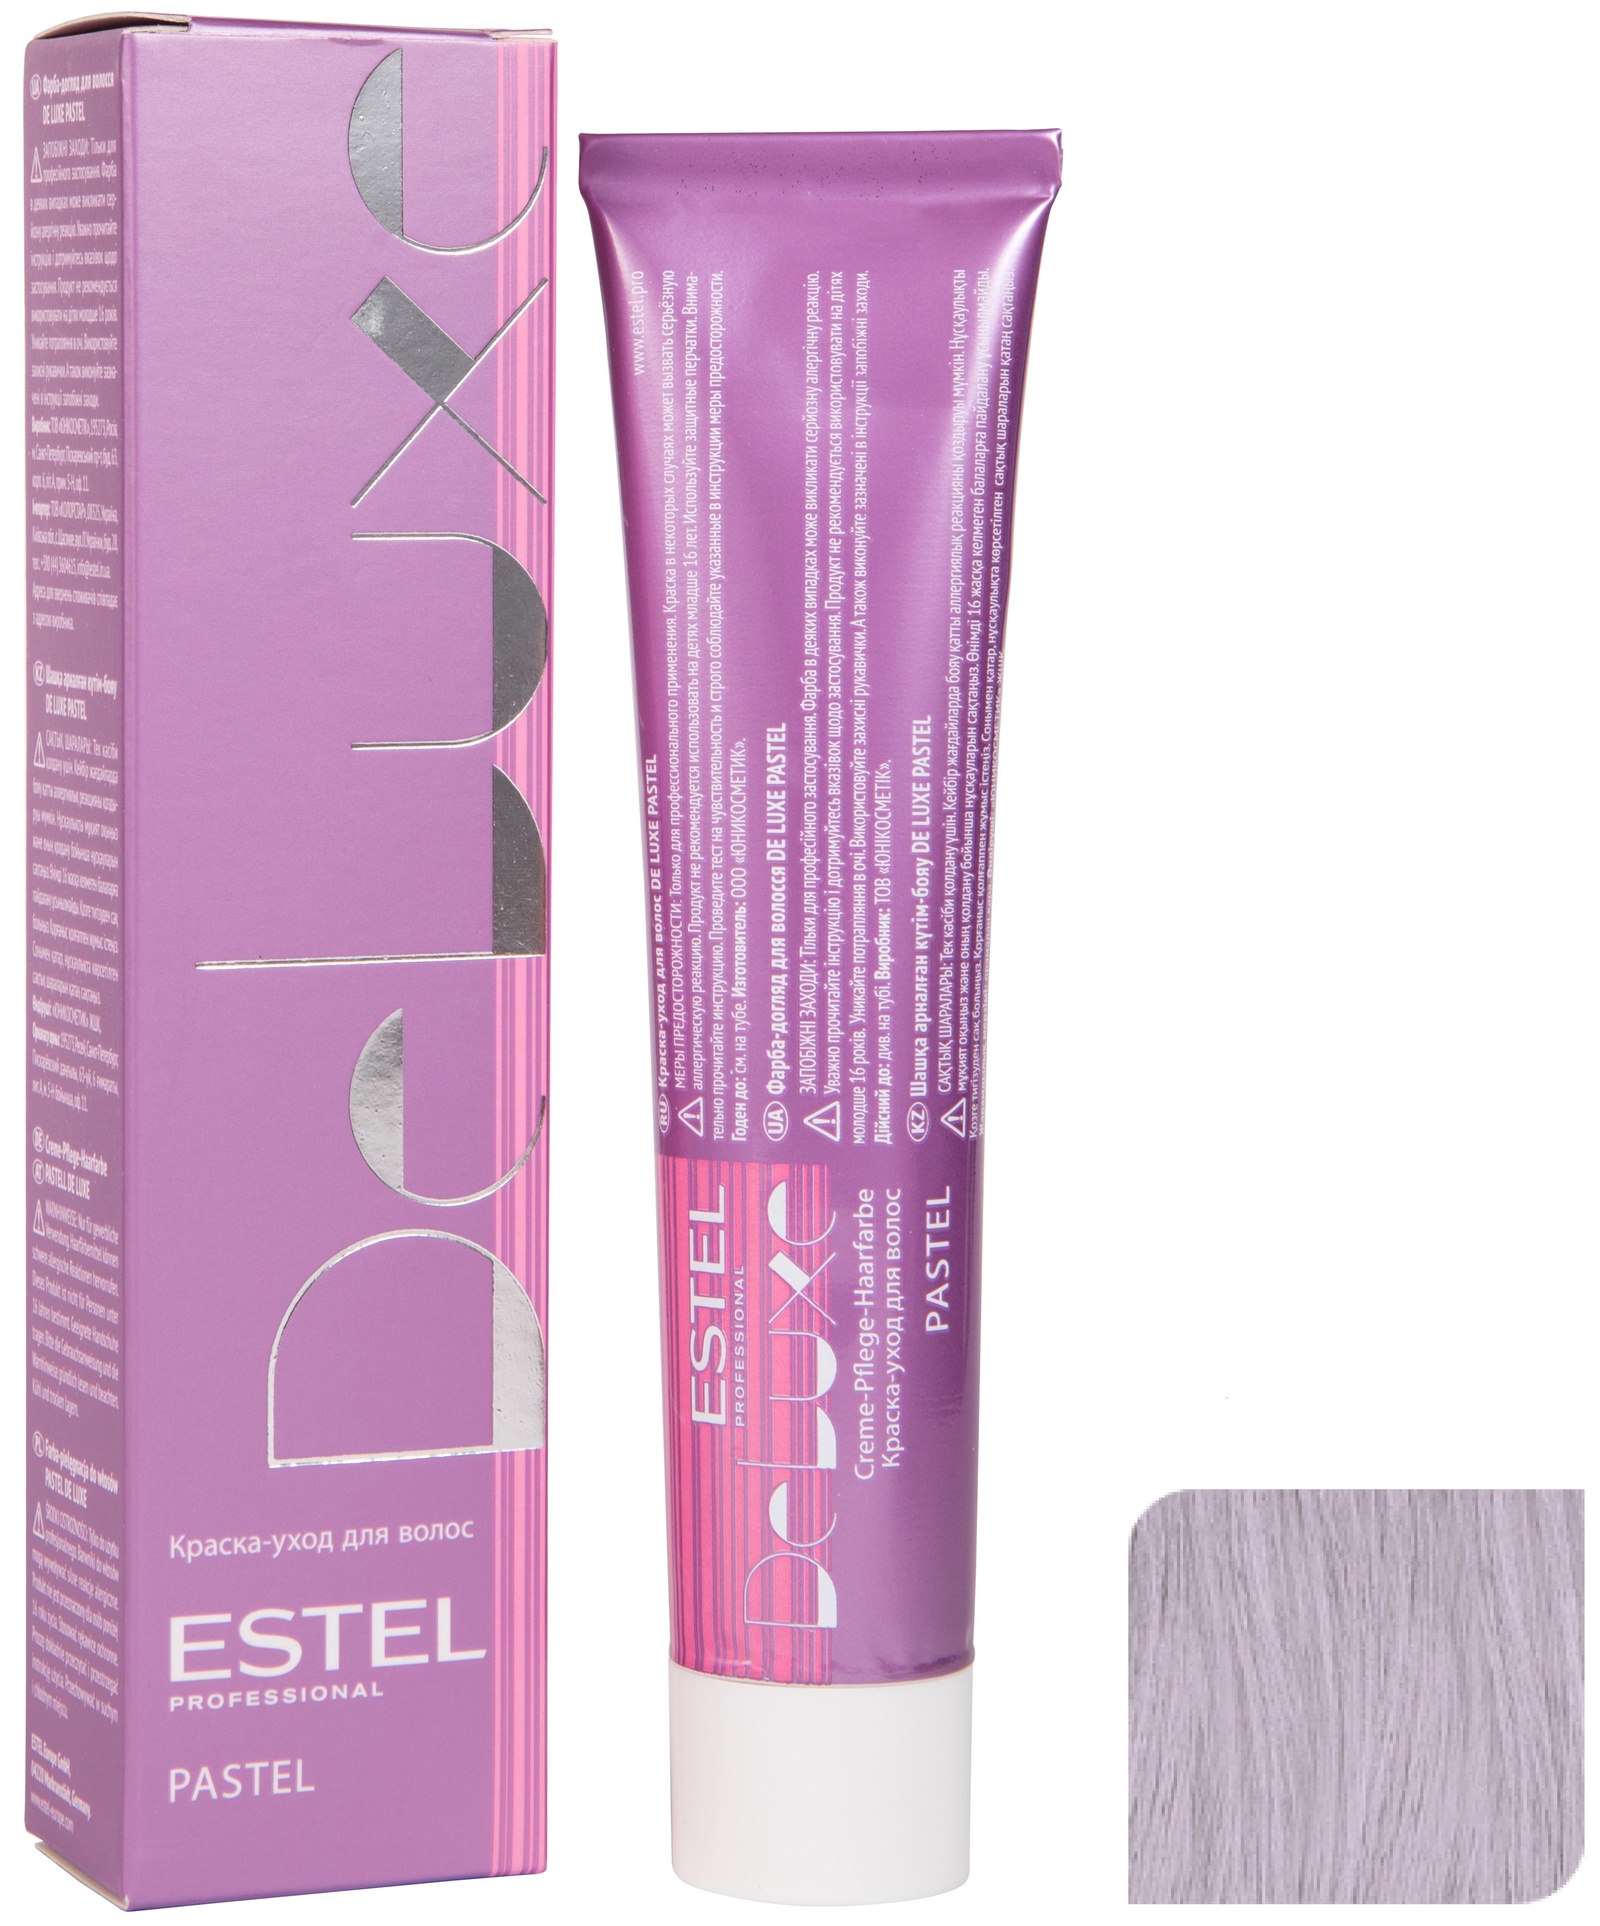 Краска для волос ESTEL PROFESSIONAL P/0018 DE LUXE PASTEL краска-уход для окрашивания волос, платина 60 мл